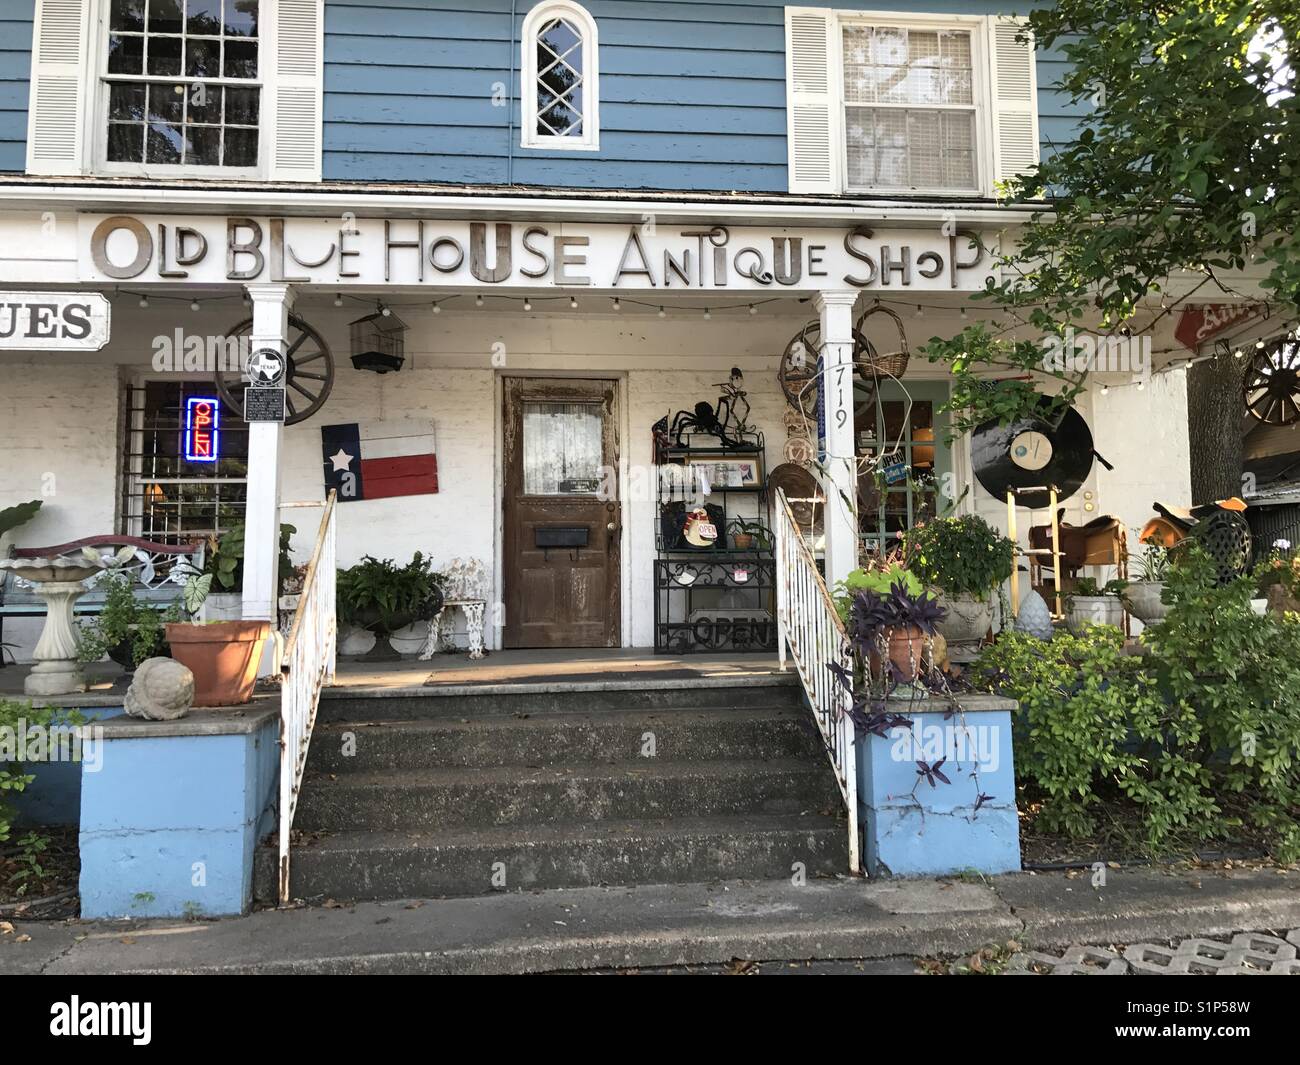 old blues house antique shop entrance Stock Photo